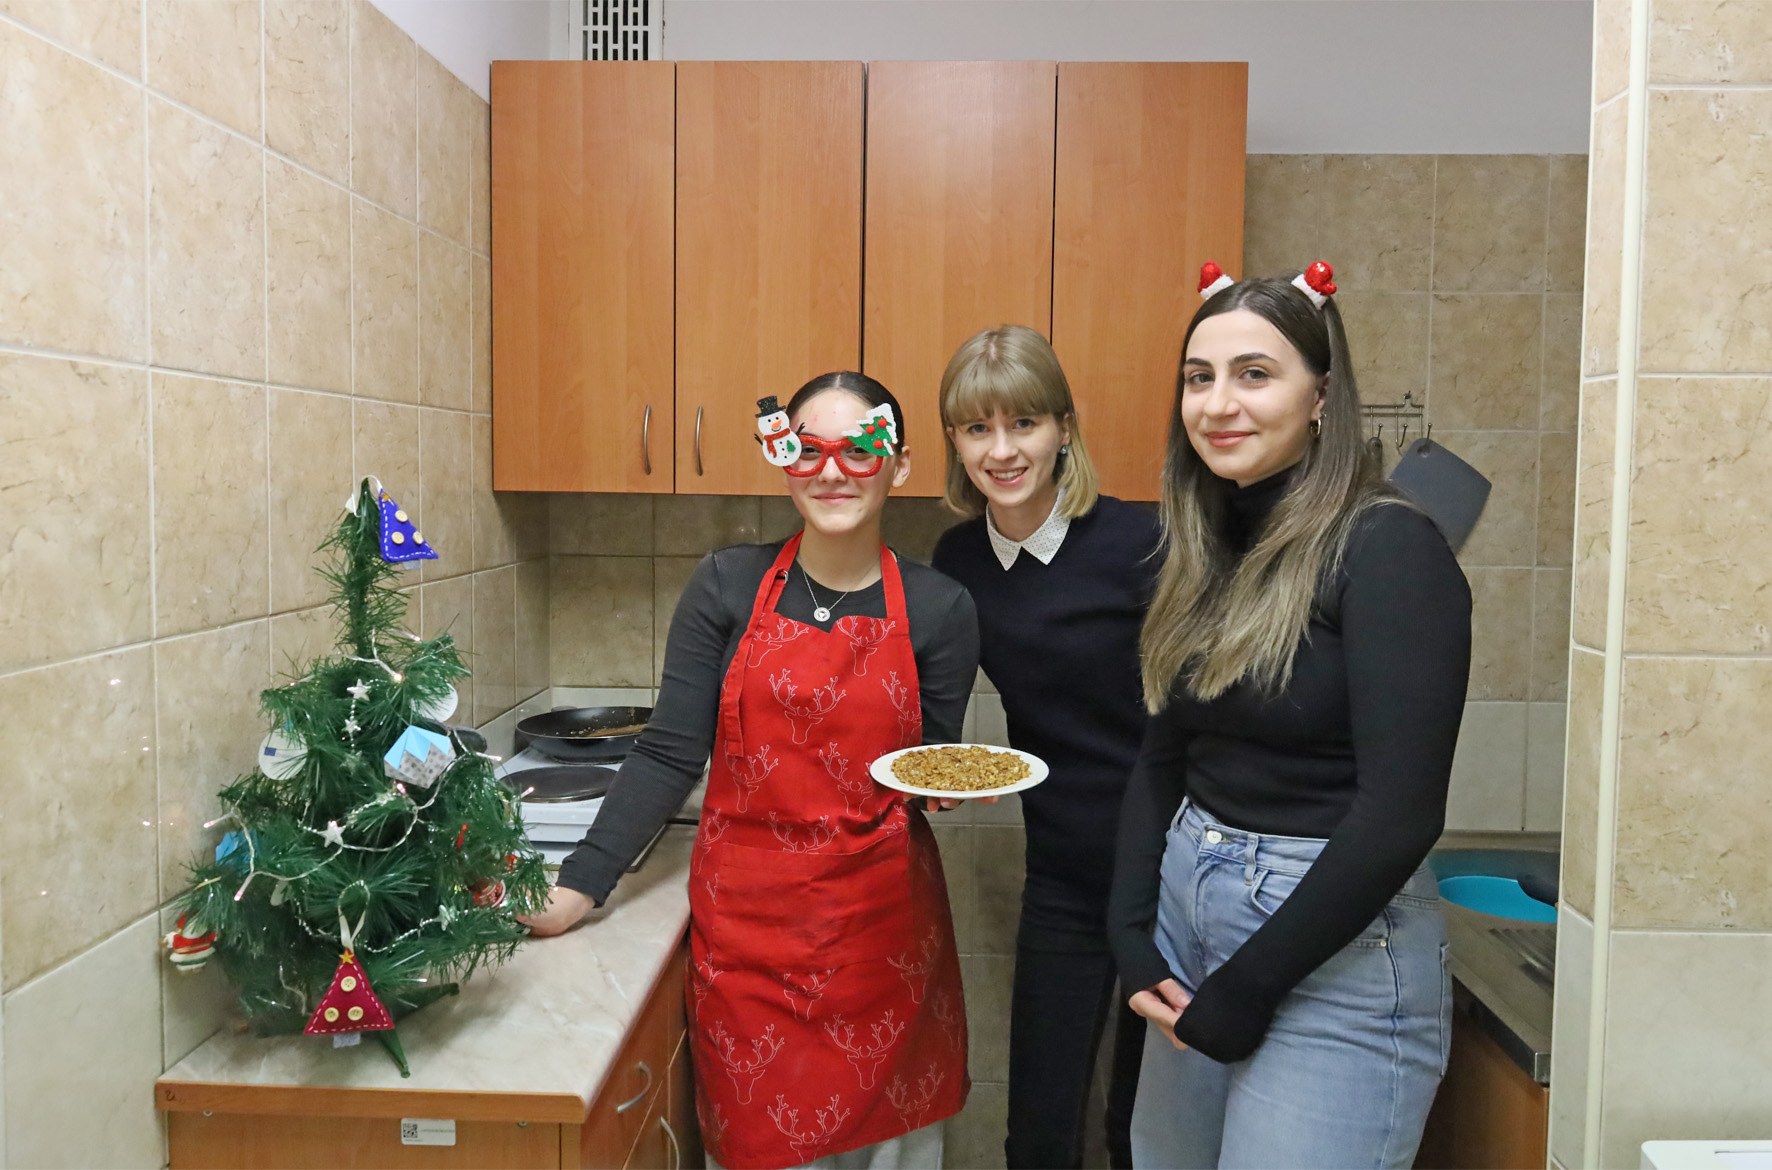 Zdjęcie grupowe. Trzy kobiety stoją w kuchni i pozują do zdjęcia. Jedna z nich trzyma talerz.